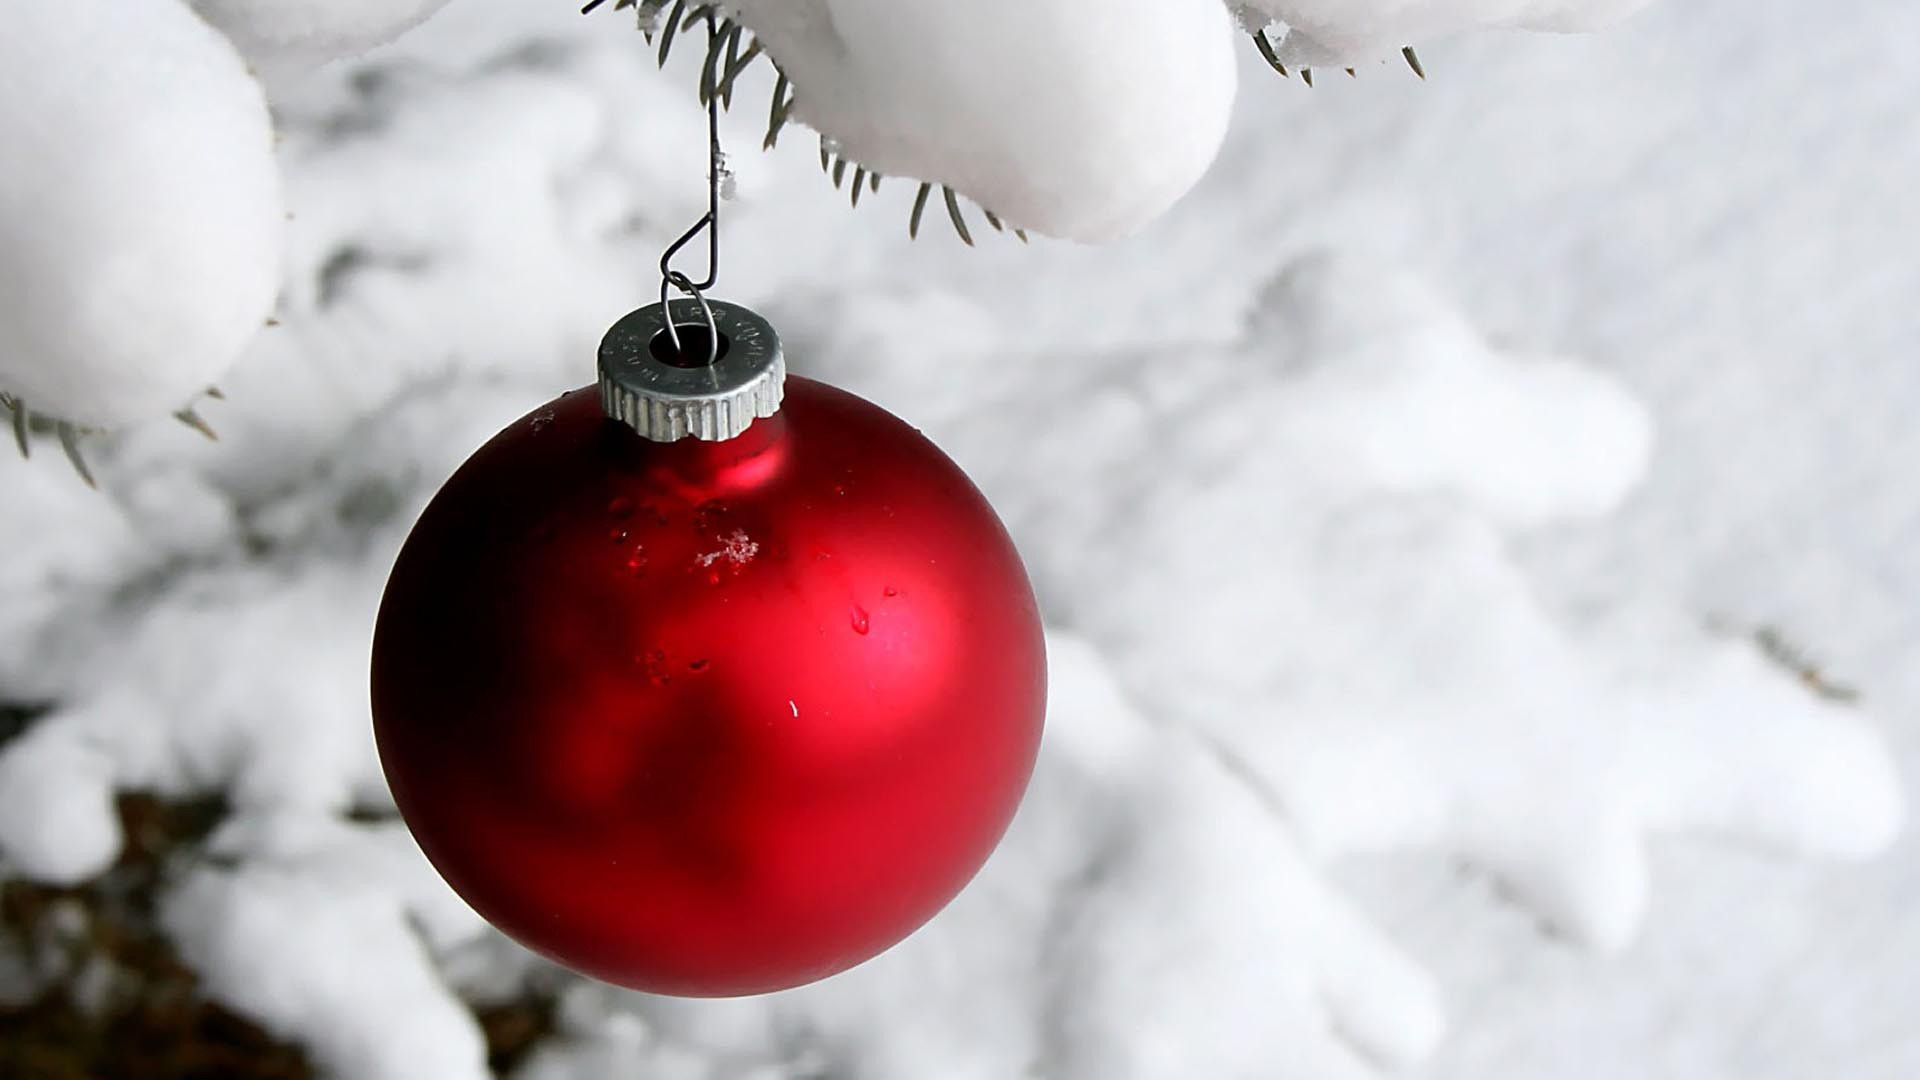 Papel de parede de Natal grátis com uma lâmpada vermelha pendurada em uma árvore com neve